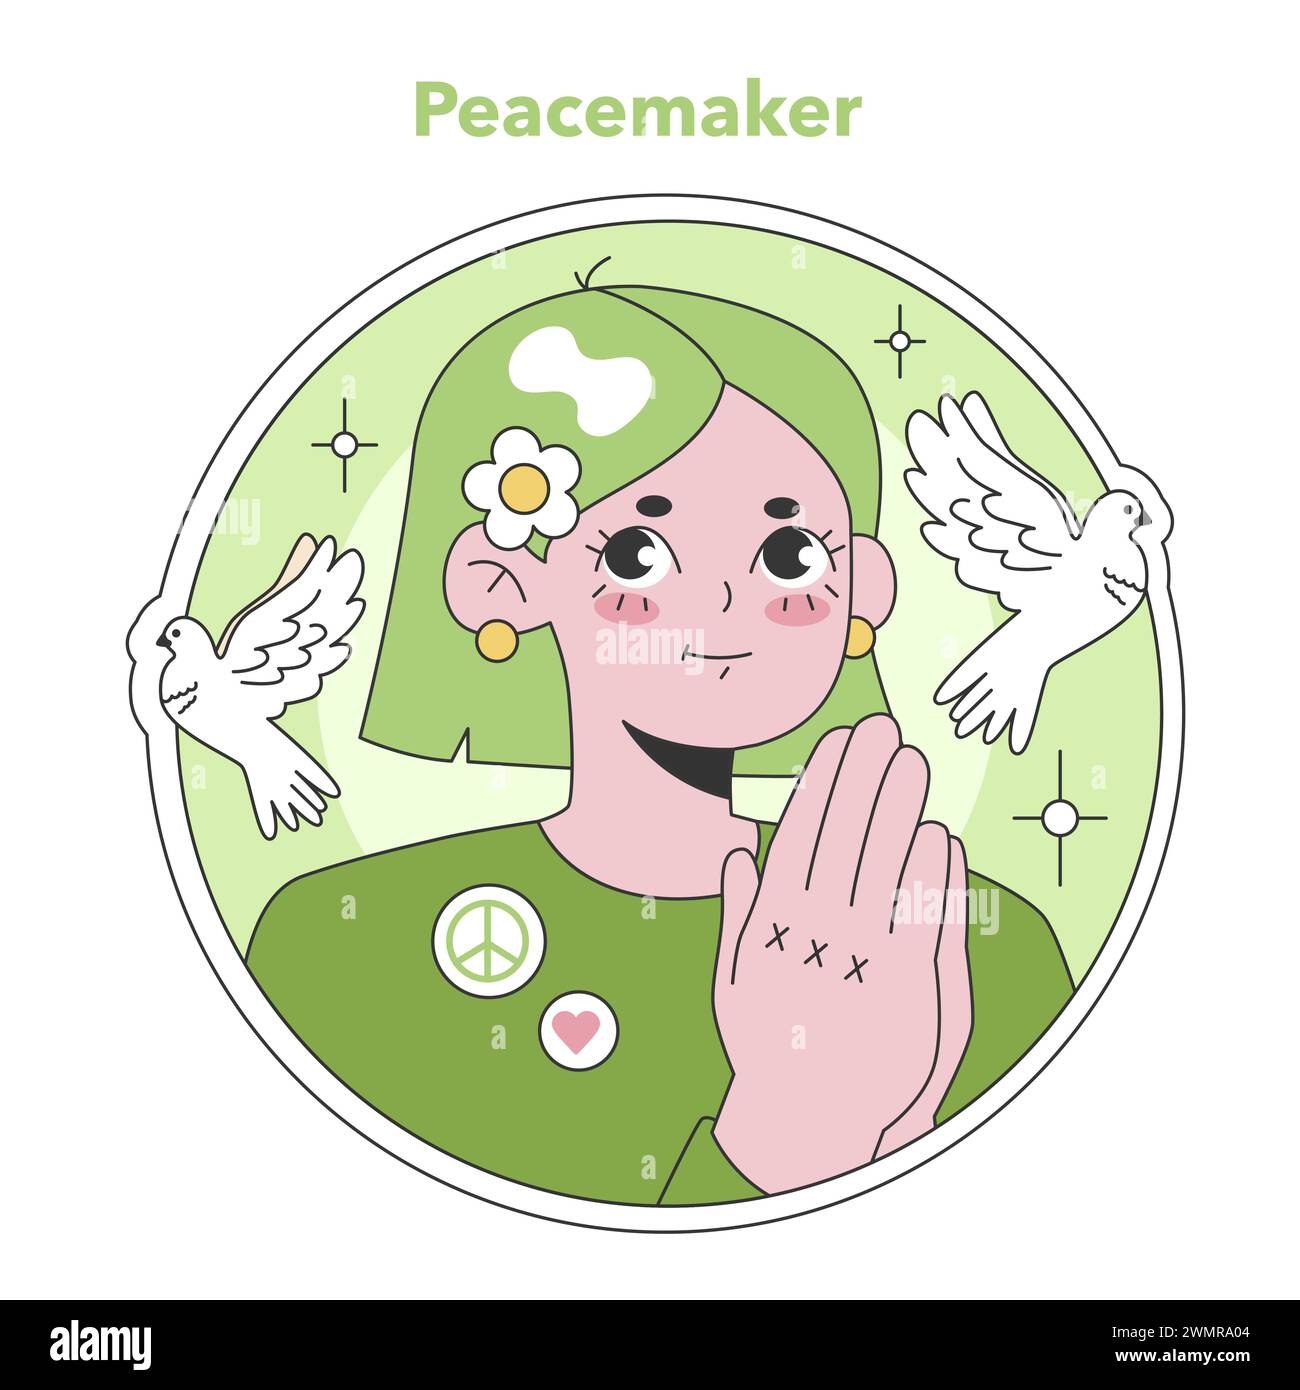 Ennéagramme Peacemaker illustration de type. Un caractère serein et harmonieux avec des colombes, incarnant le calme et la poursuite de la paix. Idéal pour les thèmes de résolution de conflits. Illustration vectorielle plate Illustration de Vecteur